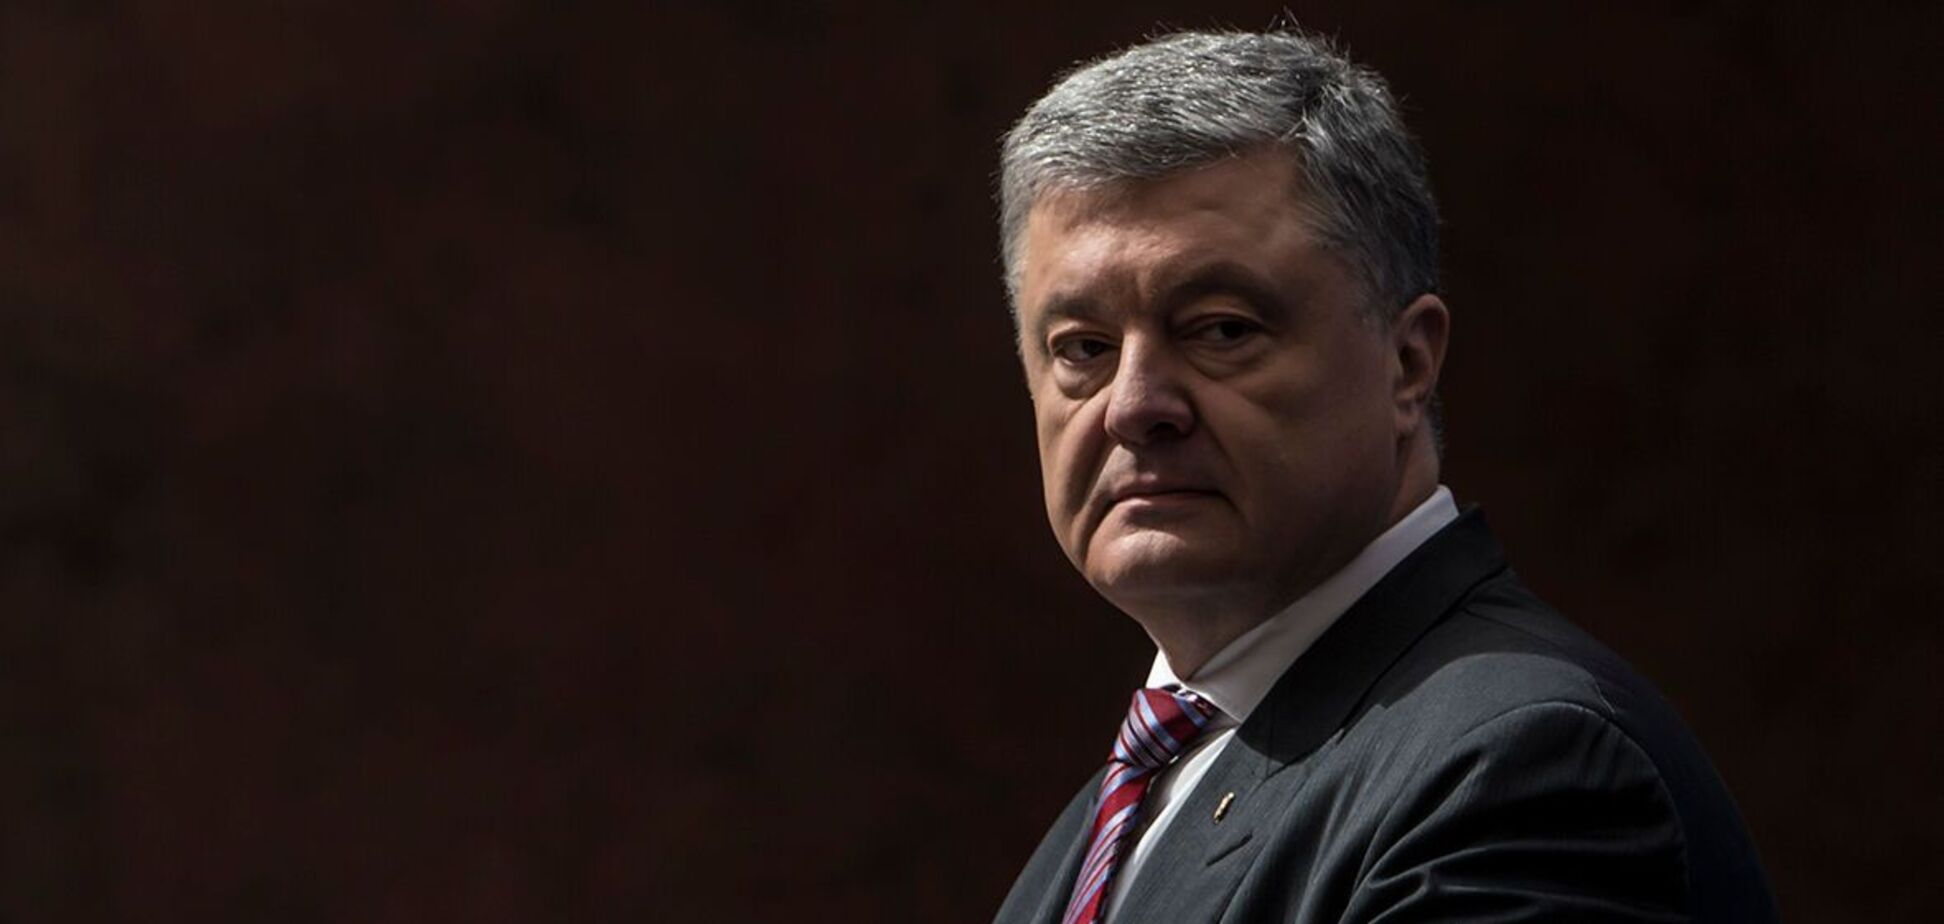 Евродепутат призвал украинские власти прекратить выборочное правосудие против Порошенко. Заявление